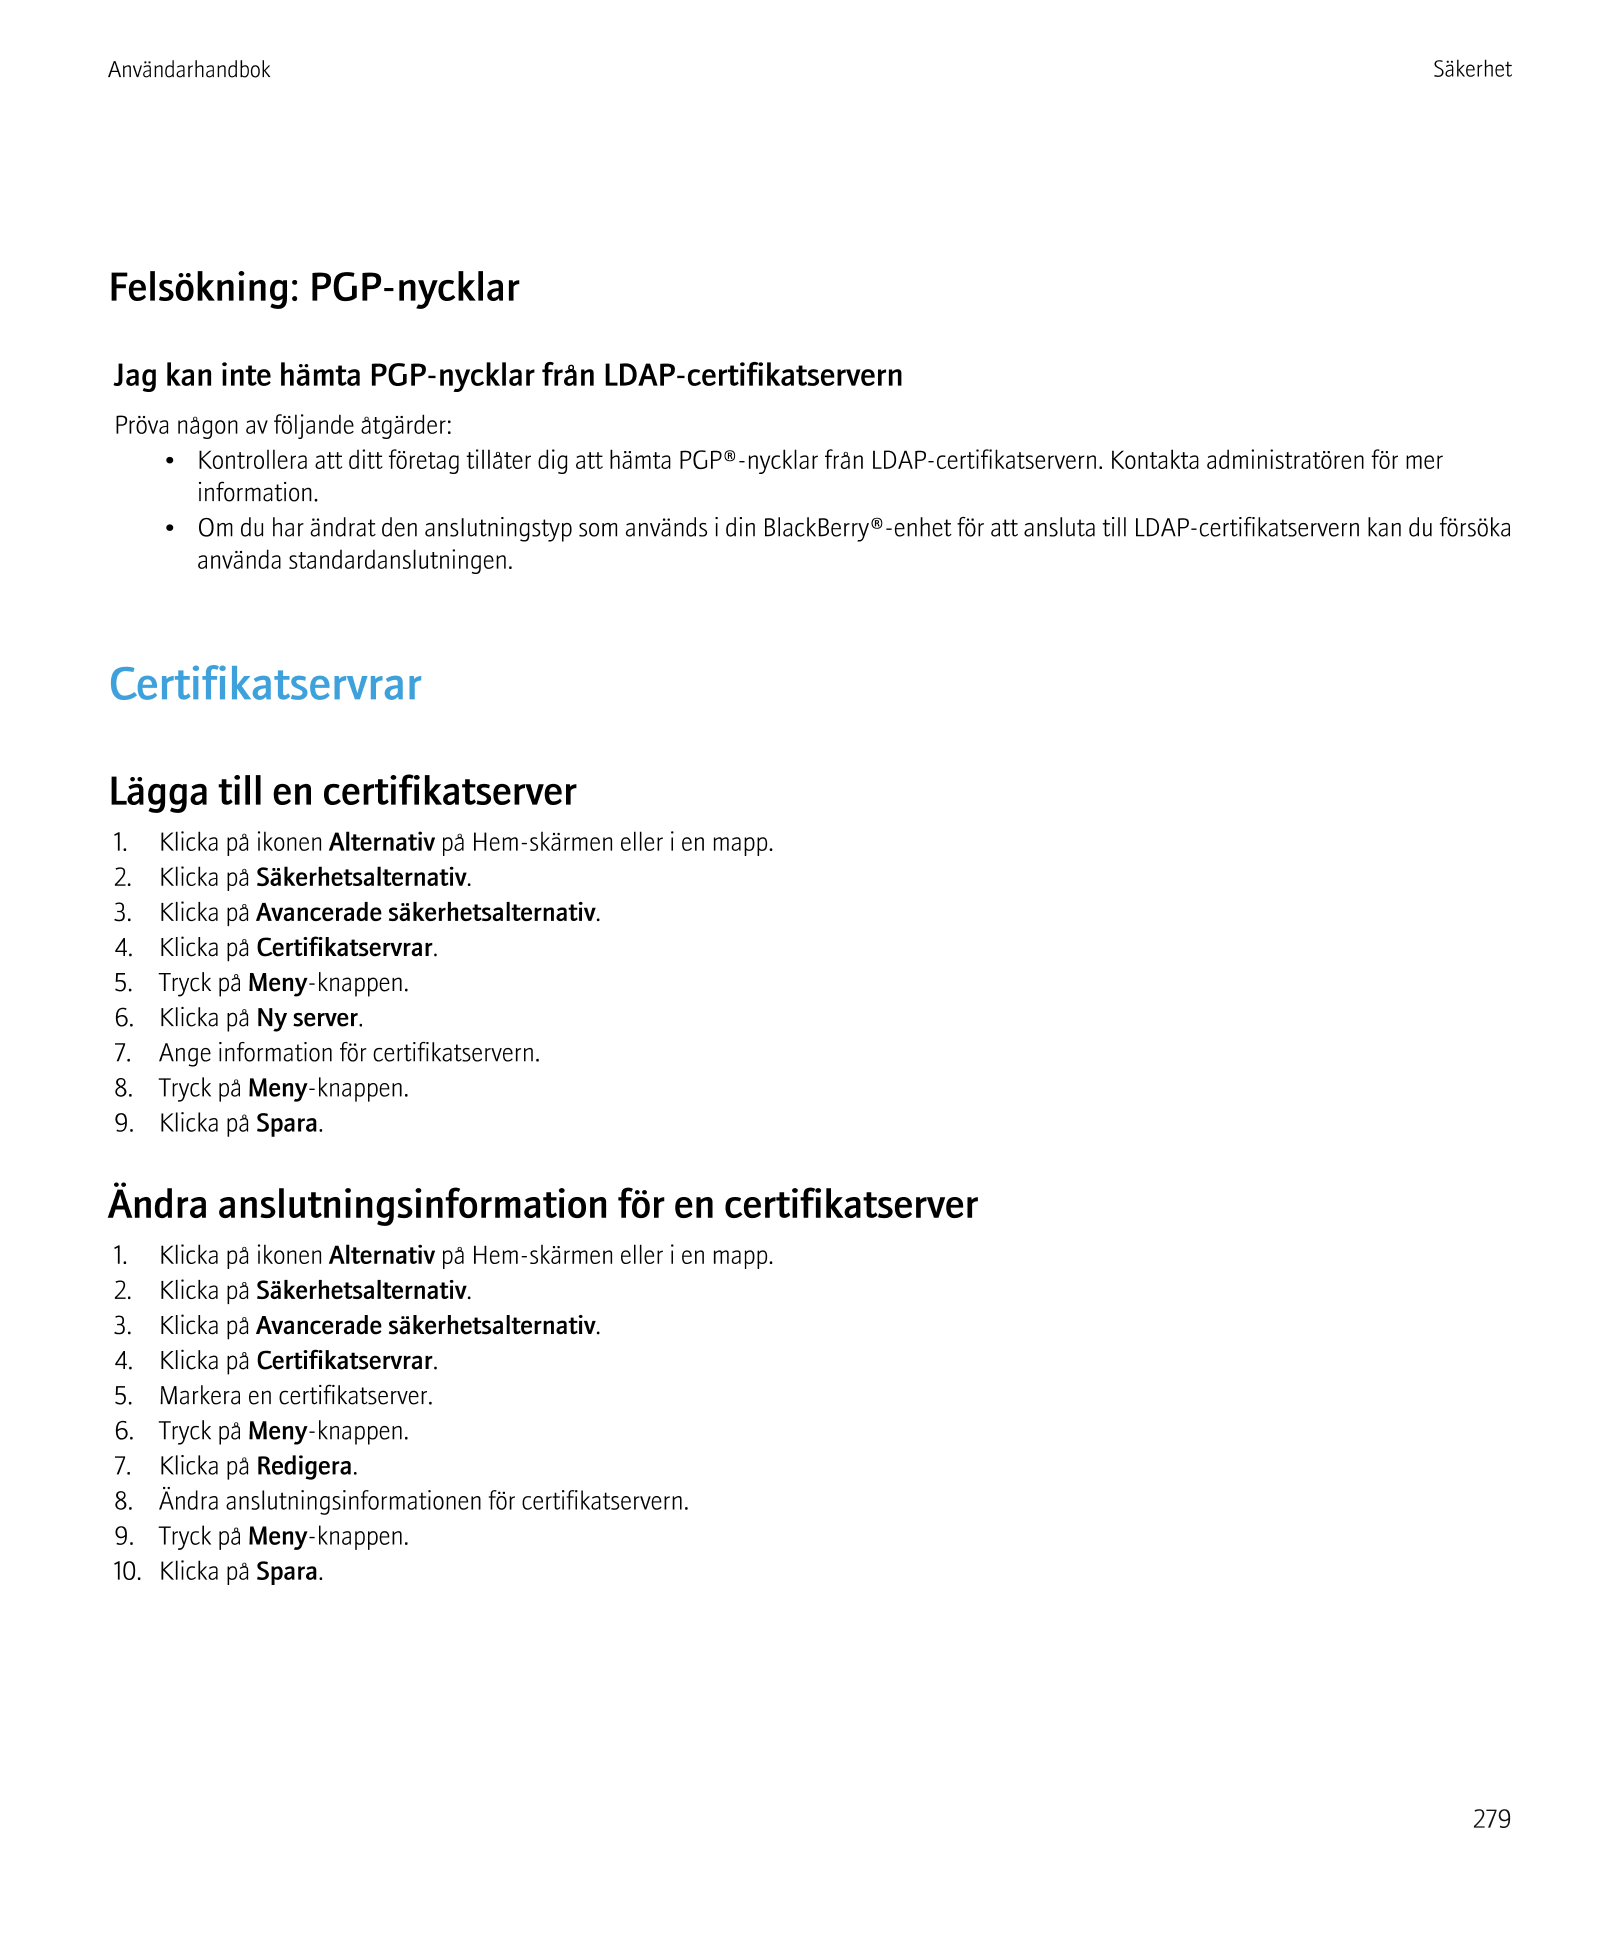 Användarhandbok Säkerhet
Felsökning: PGP-nycklar
Jag kan inte hämta PGP-nycklar från LDAP-certifikatservern
Pröva någon av följa